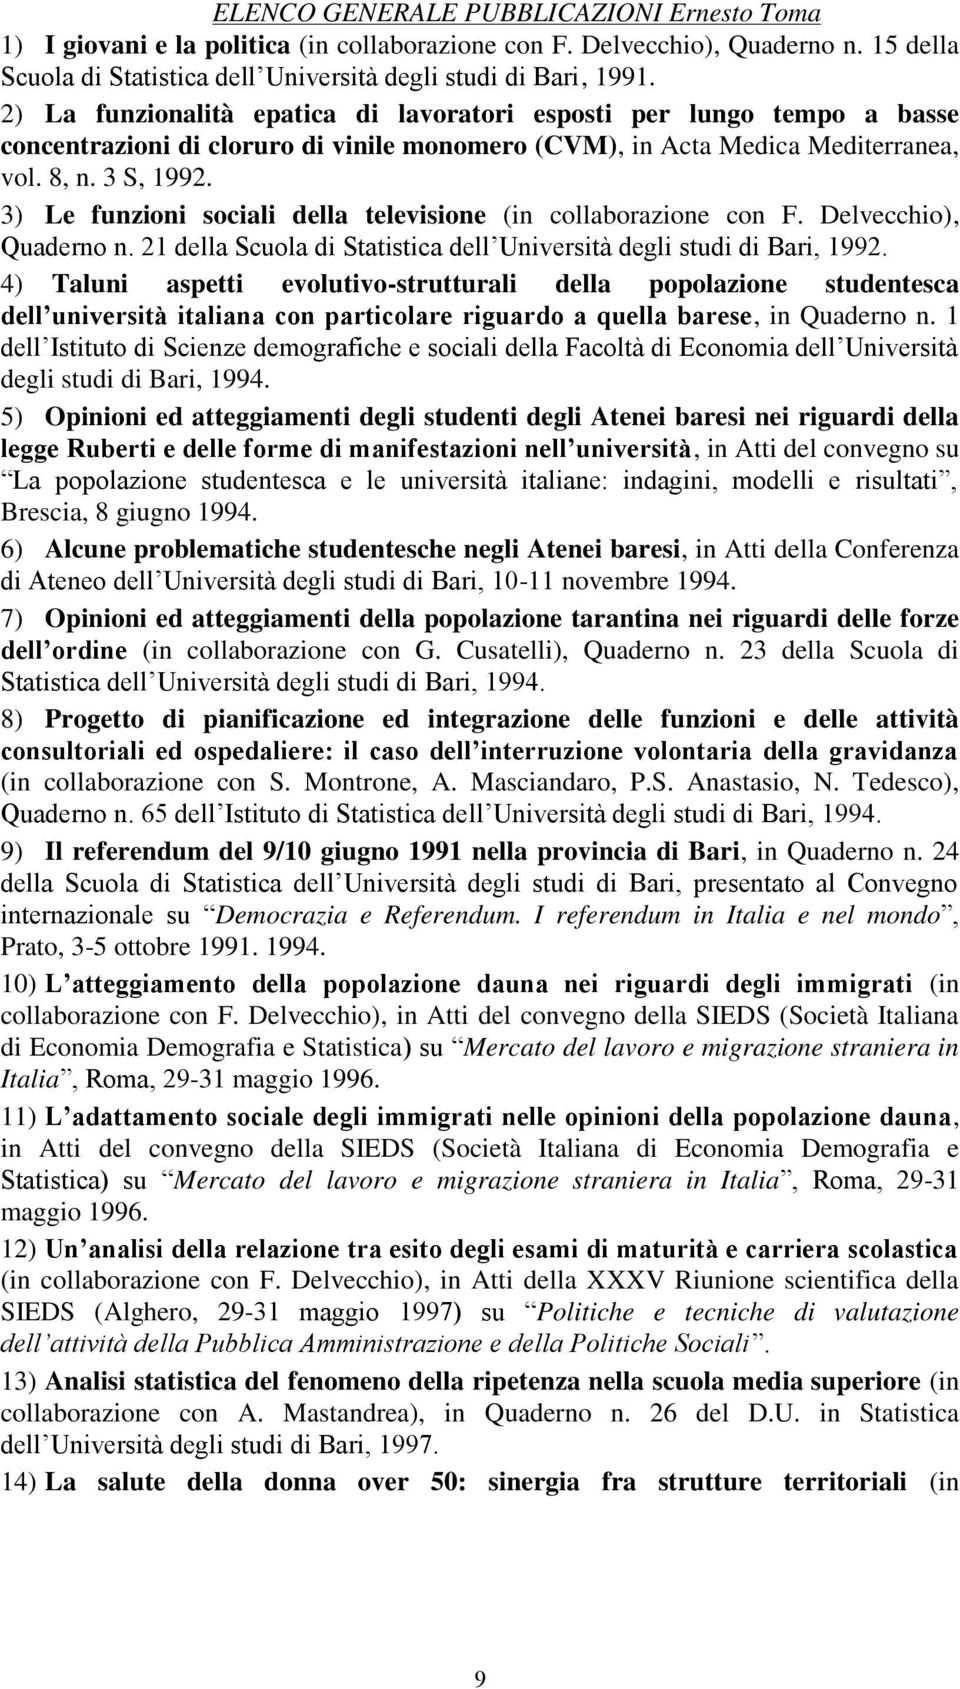 3) Le funzioni sociali della televisione (in collaborazione con F. Delvecchio), Quaderno n. 21 della Scuola di Statistica dell Università degli studi di Bari, 1992.